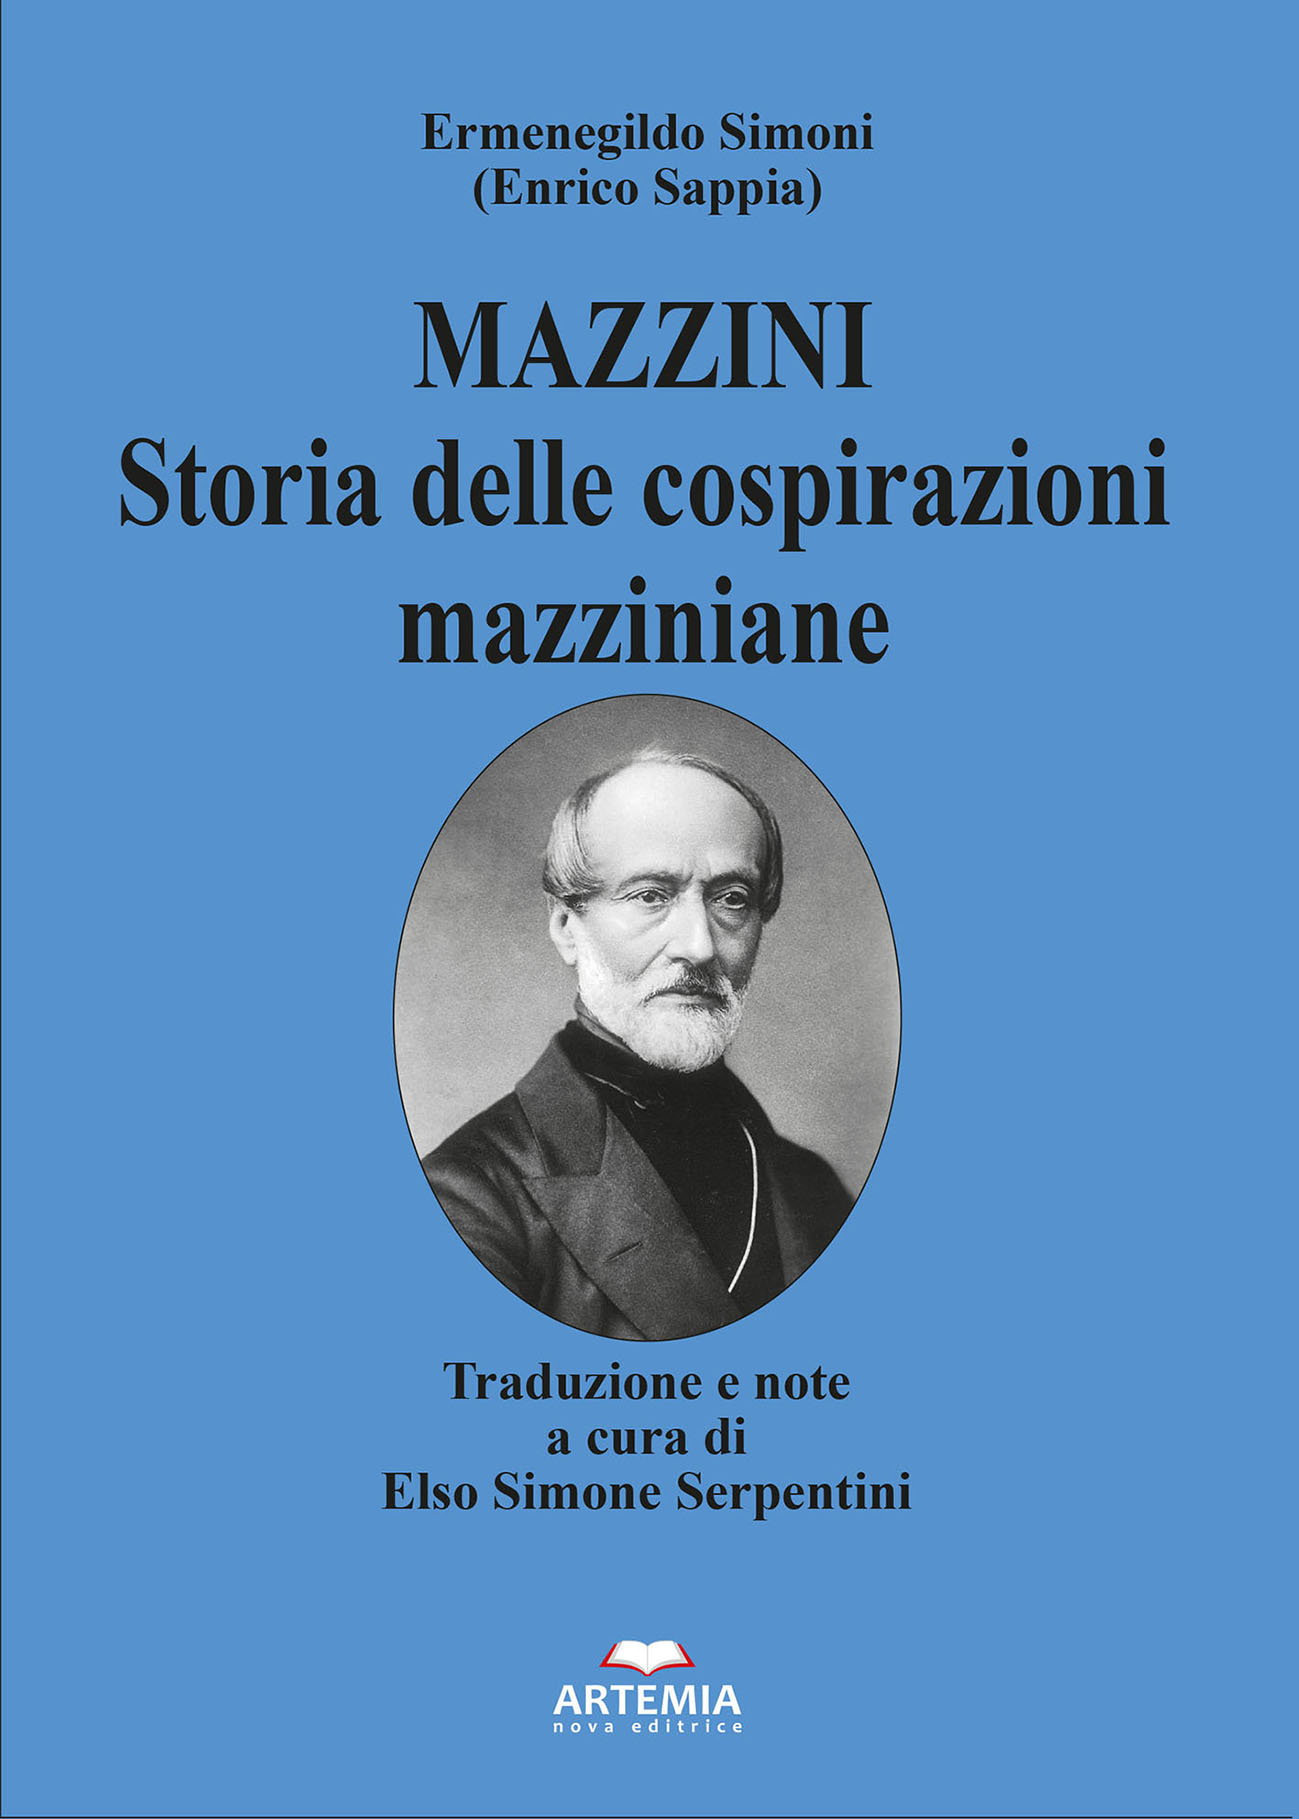 MAZZINI. Storia delle cospirazioni mazziniane